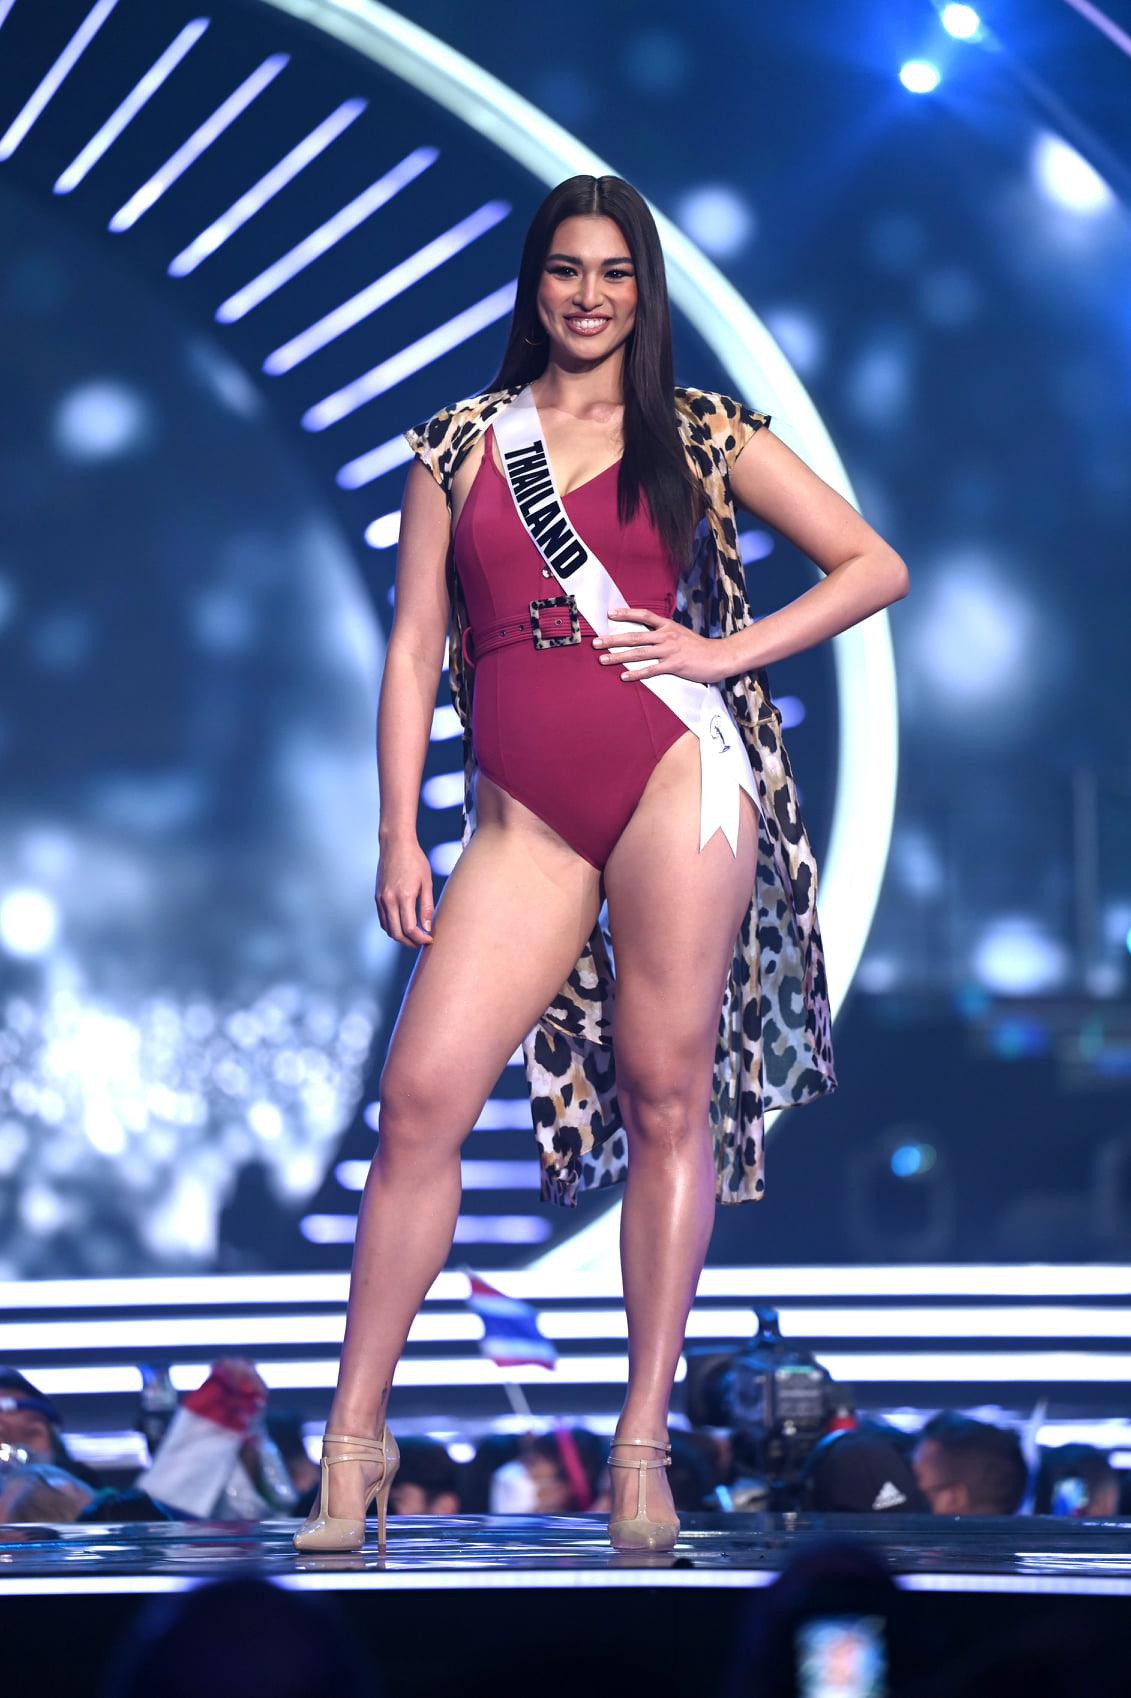 Sau đêm thi bán kết, Hoa hậu Hoàn vũ Thái Lan nhận về nhiều lời chê vì ngoại hình "đô con" như lực sĩ,&nbsp;kém thon gọn, nhất là phần bắp đùi chưa thật sự săn chắc.